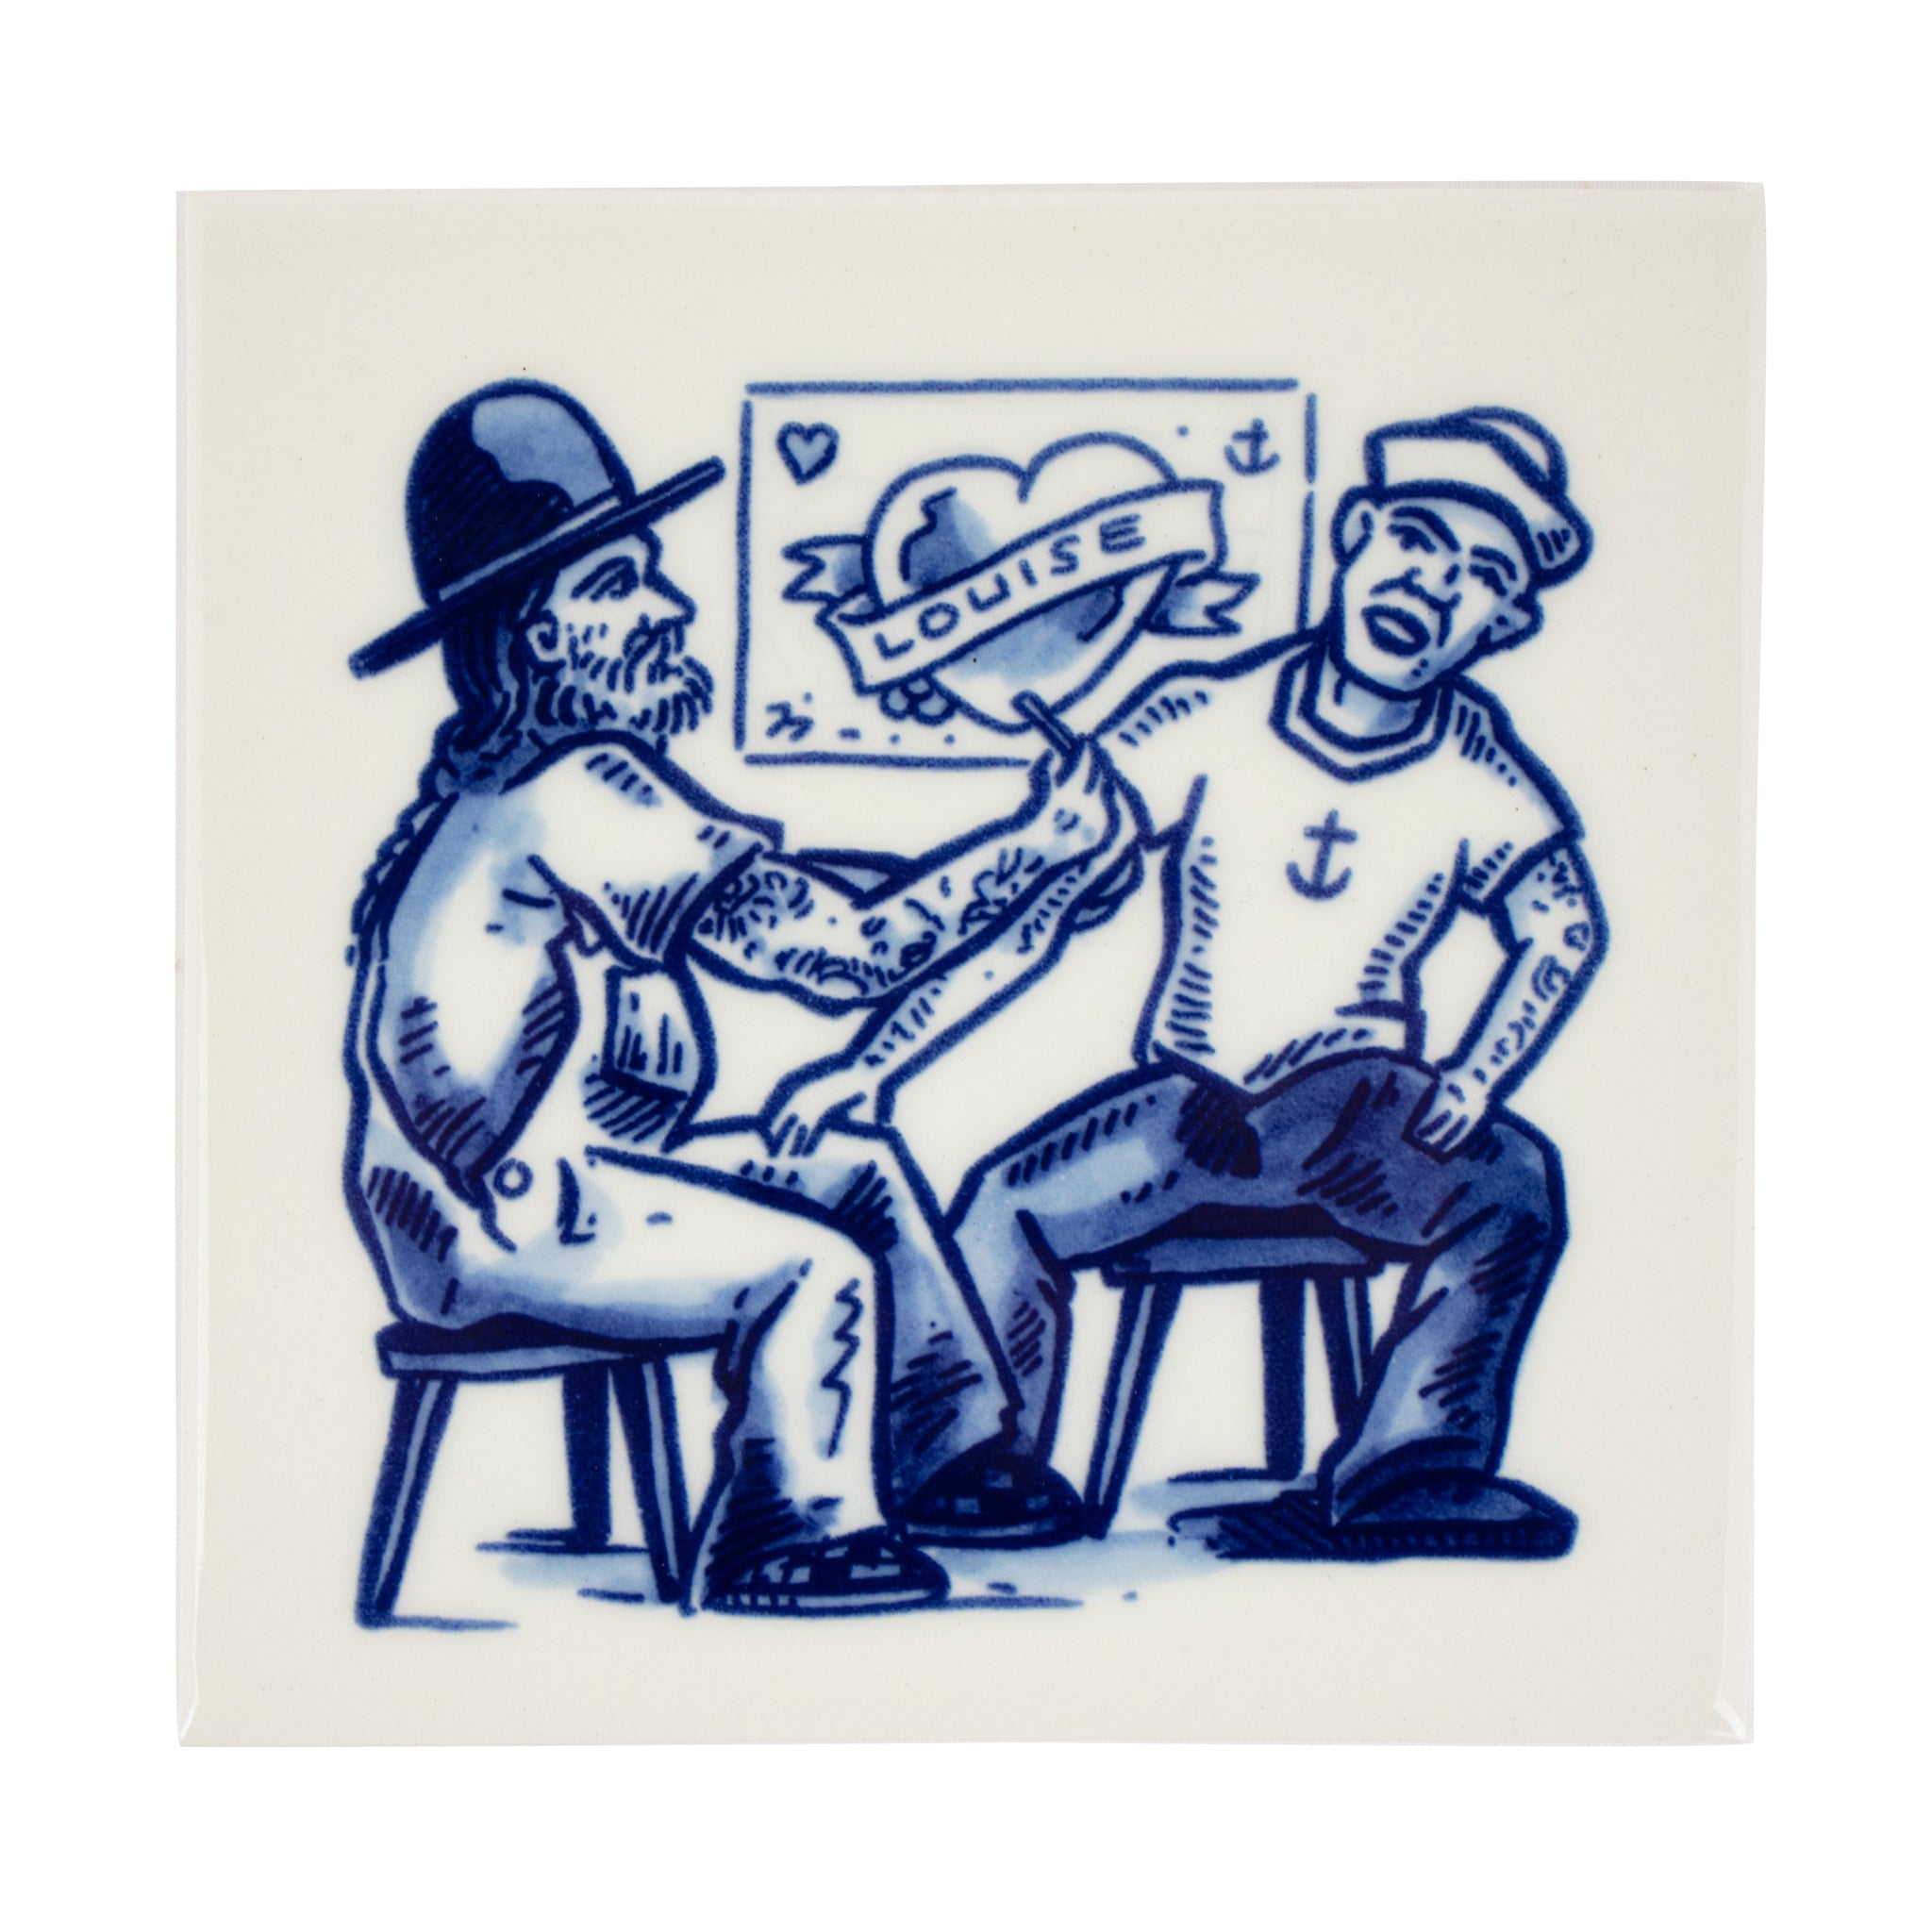 Schiffmacher Royal Blue Tattoo • Tegel • Schiffmacher Royal Blue Tattoo is een unieke samenwerking tussen tattoo artist Henk Schiffmacher en Royal Delft - Porcelyne Fles. De oude ambachten en tradities van beiden komen samen in prachtige objecten als vazen, borden en tegels. Rijk aan cultuur en historie.